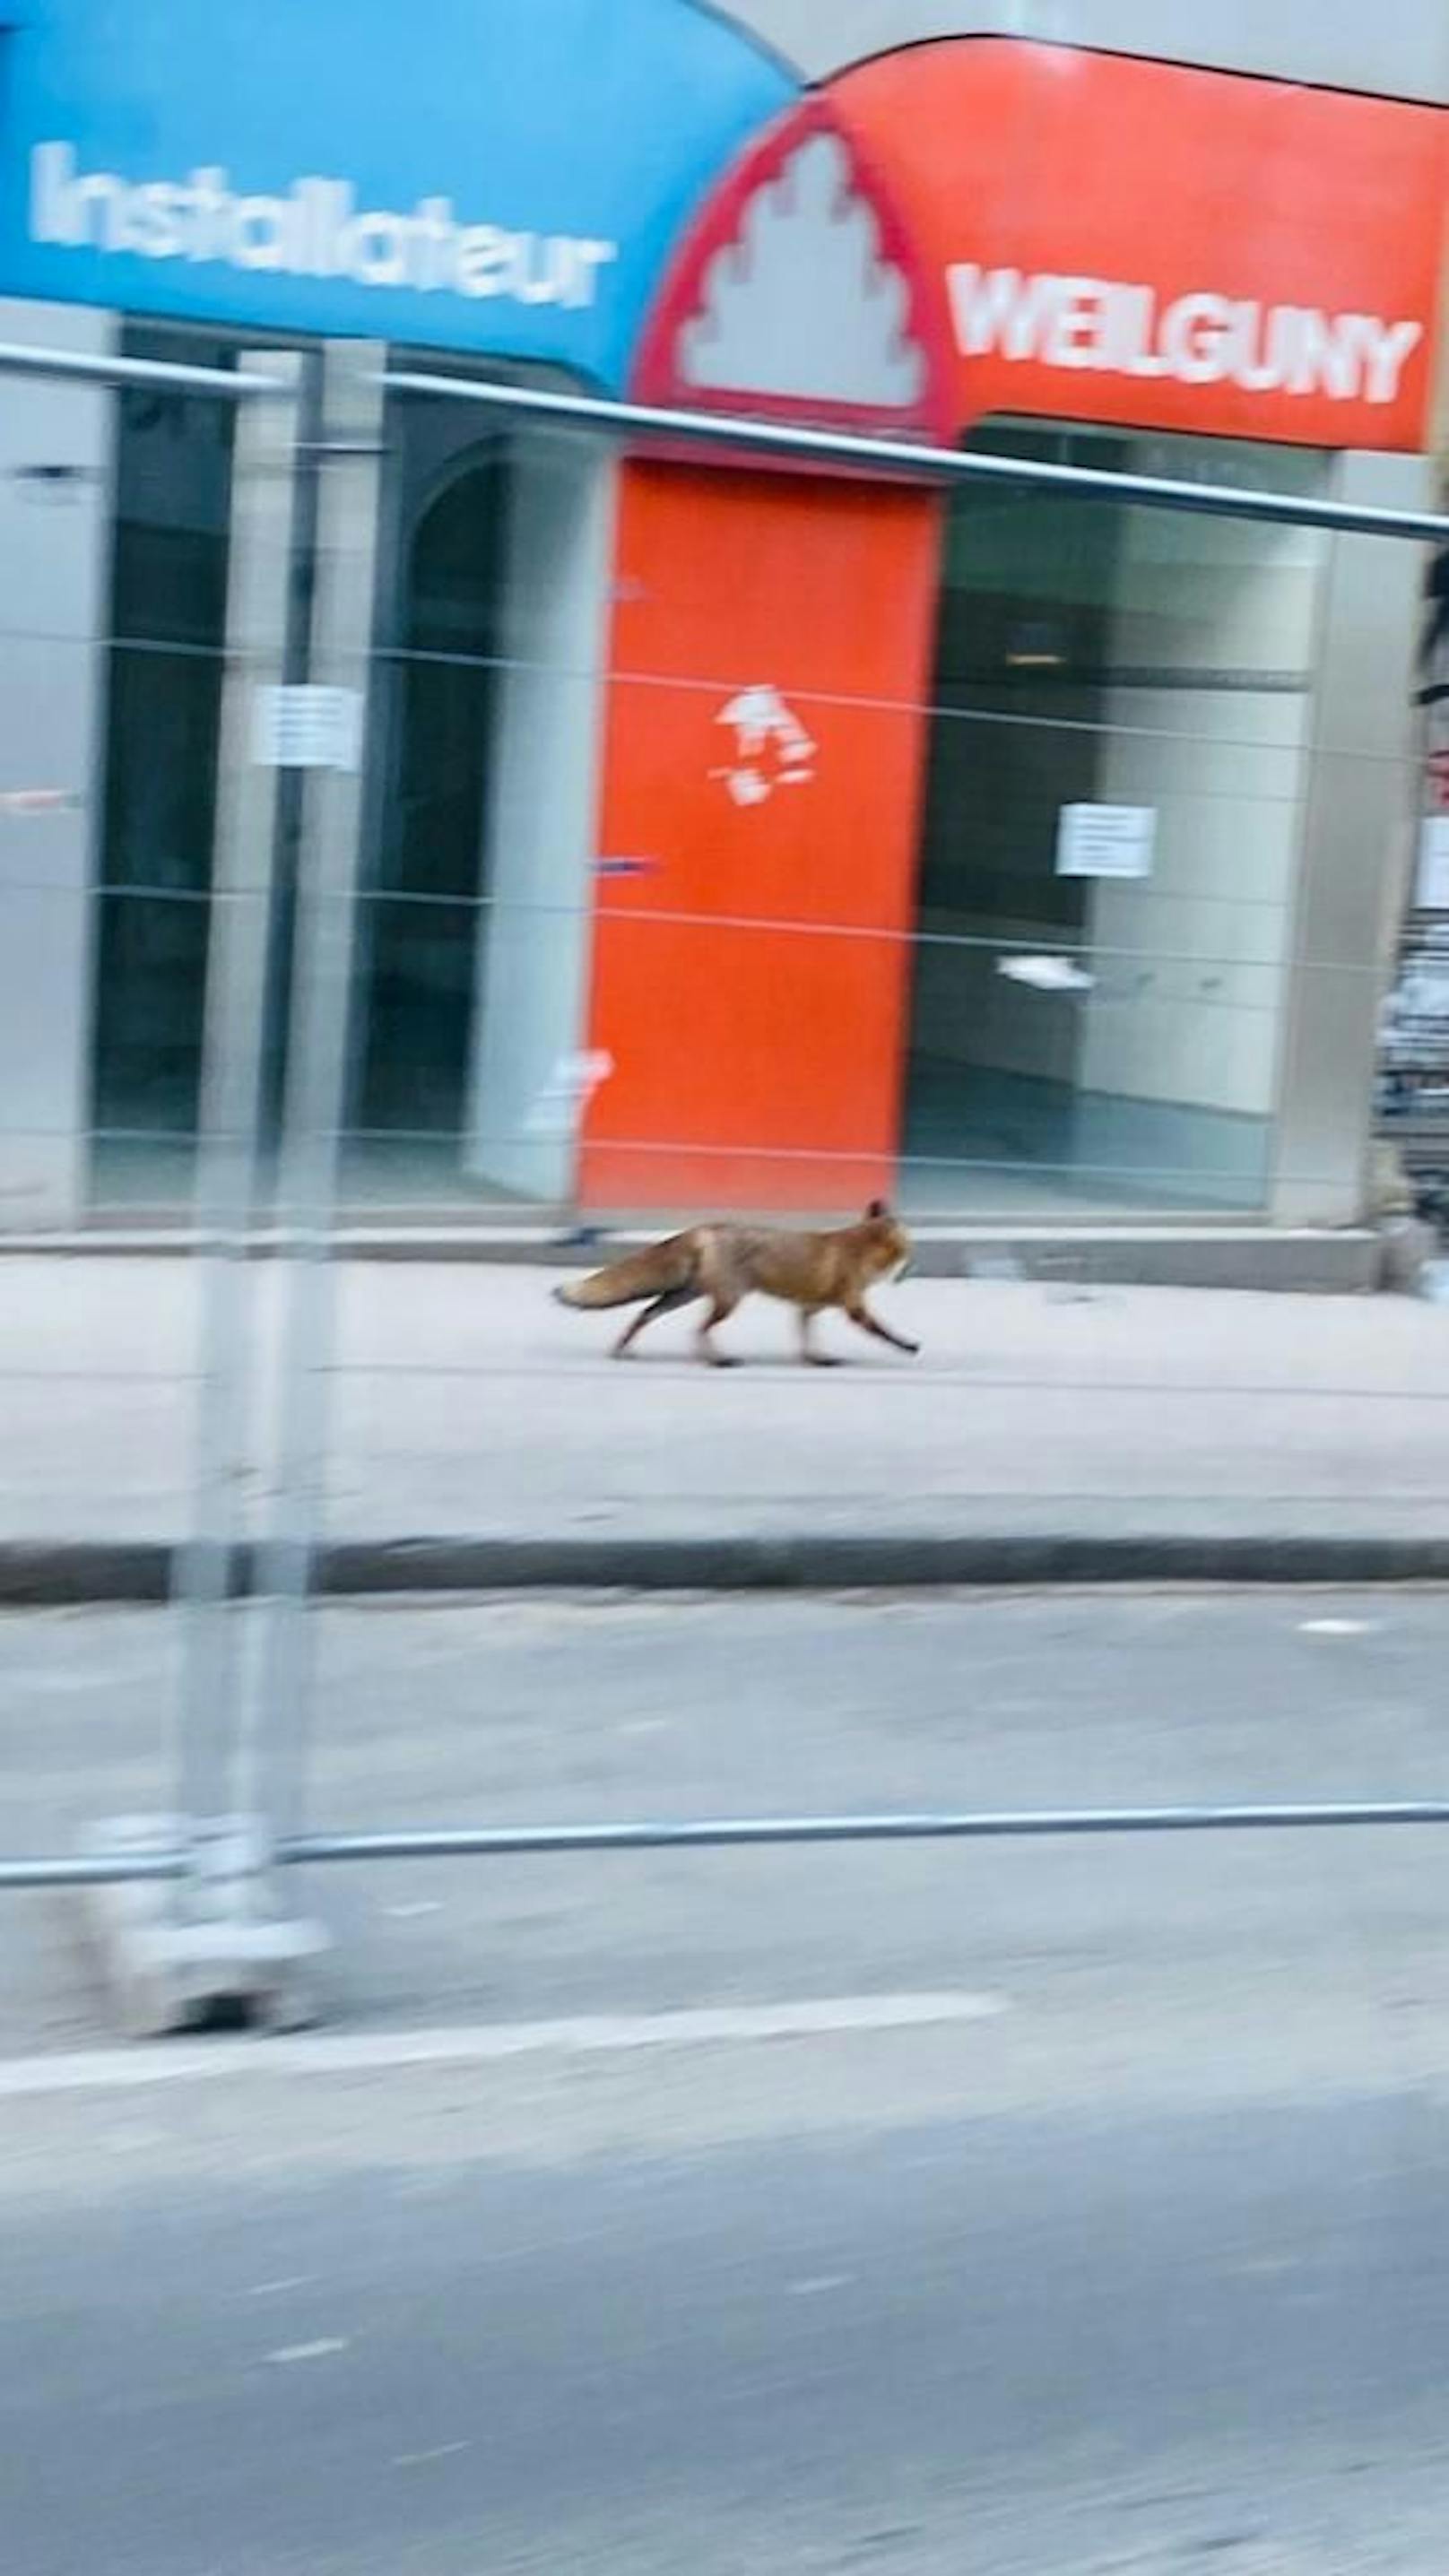 Der Fuchs bewegte sich auf der Favoritenstraße Ecke Kolschitzkygasse im vierten Bezirk.